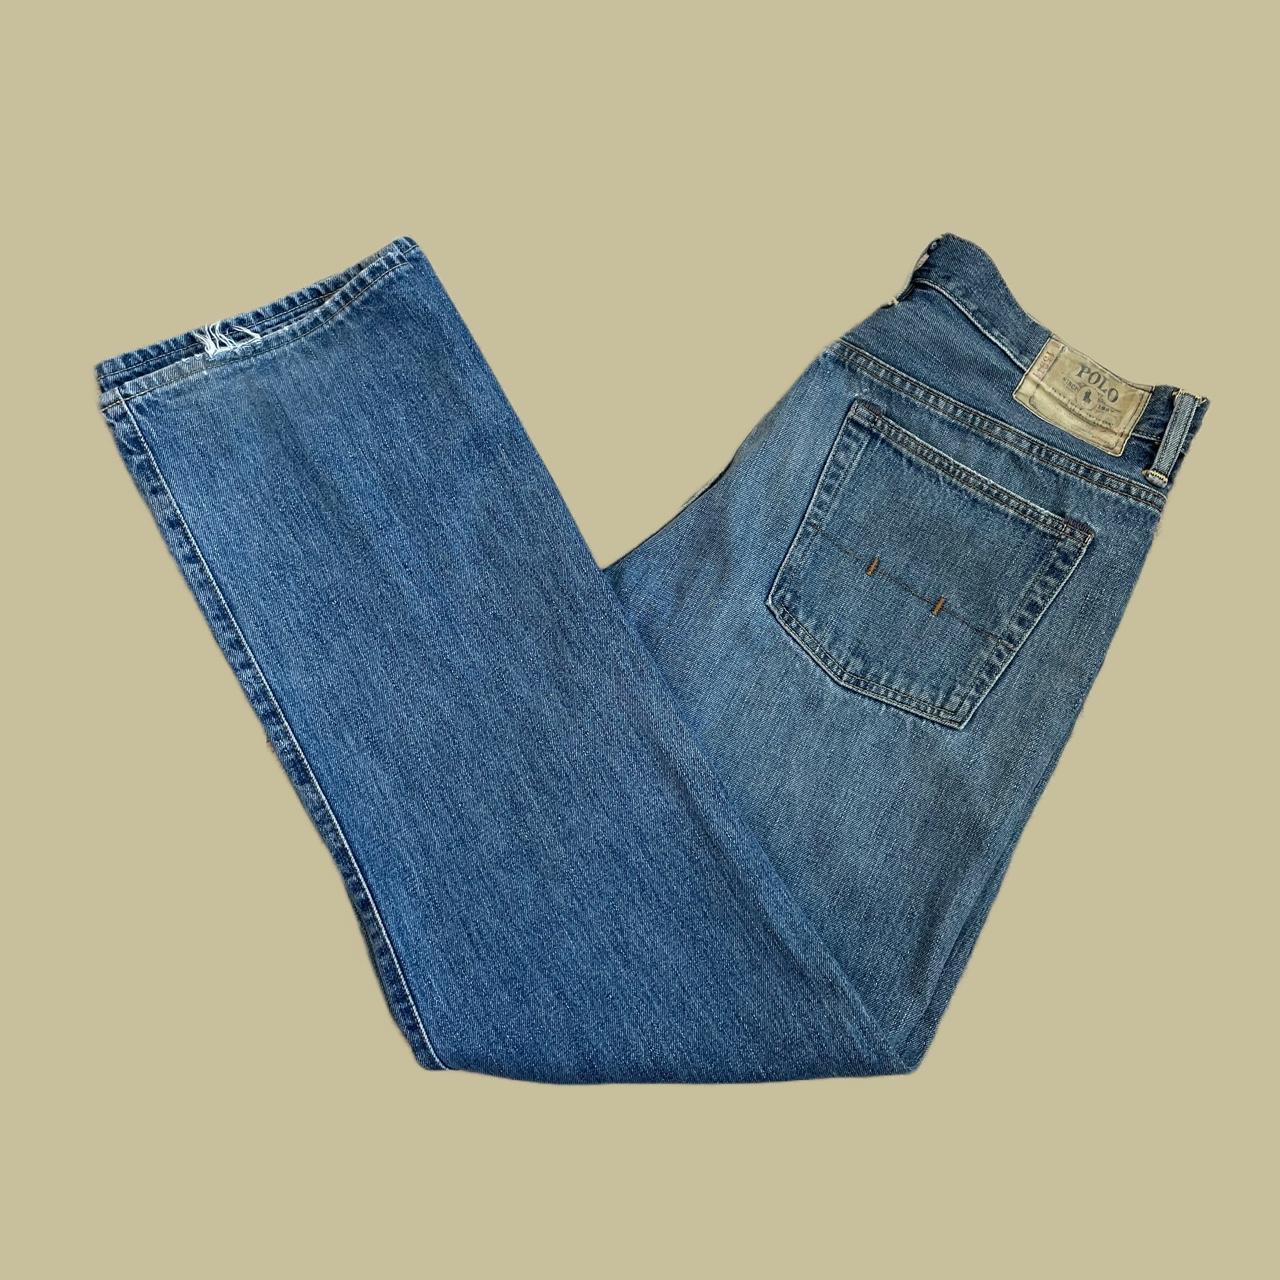 Polo Ralph Lauren men’s vintage relaxed fit jeans... - Depop